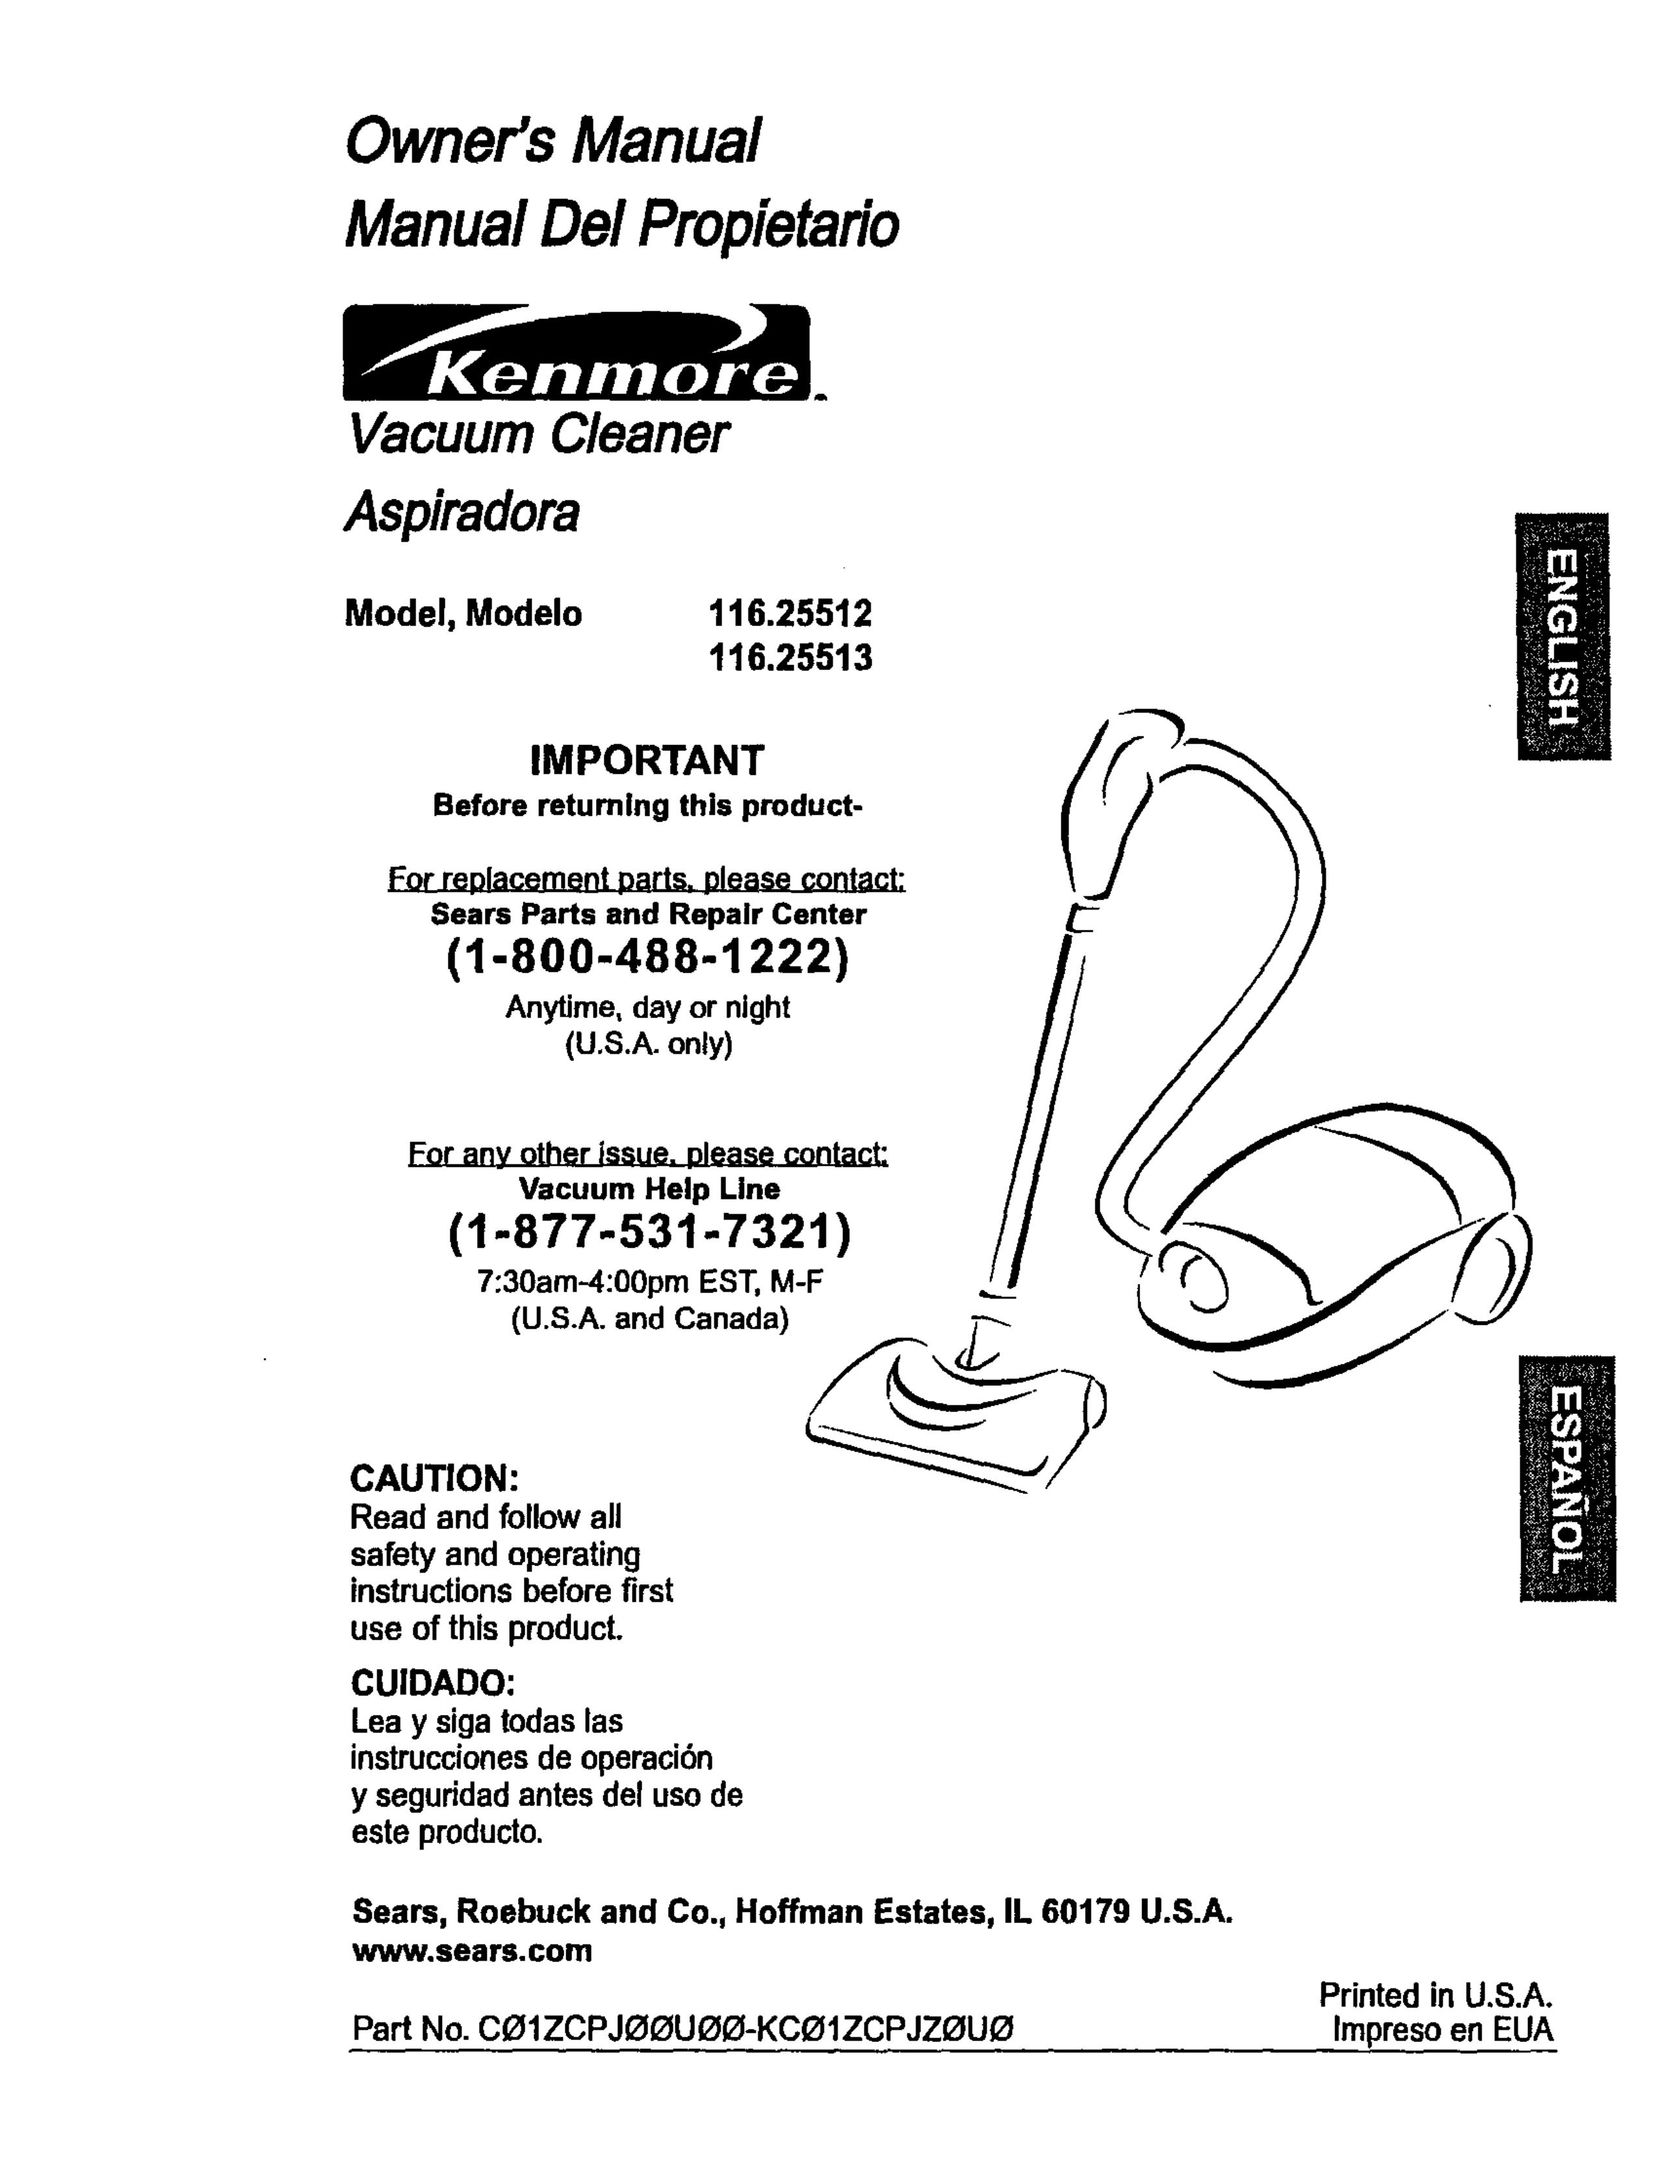 Kenmore 116.25513 Vacuum Cleaner User Manual